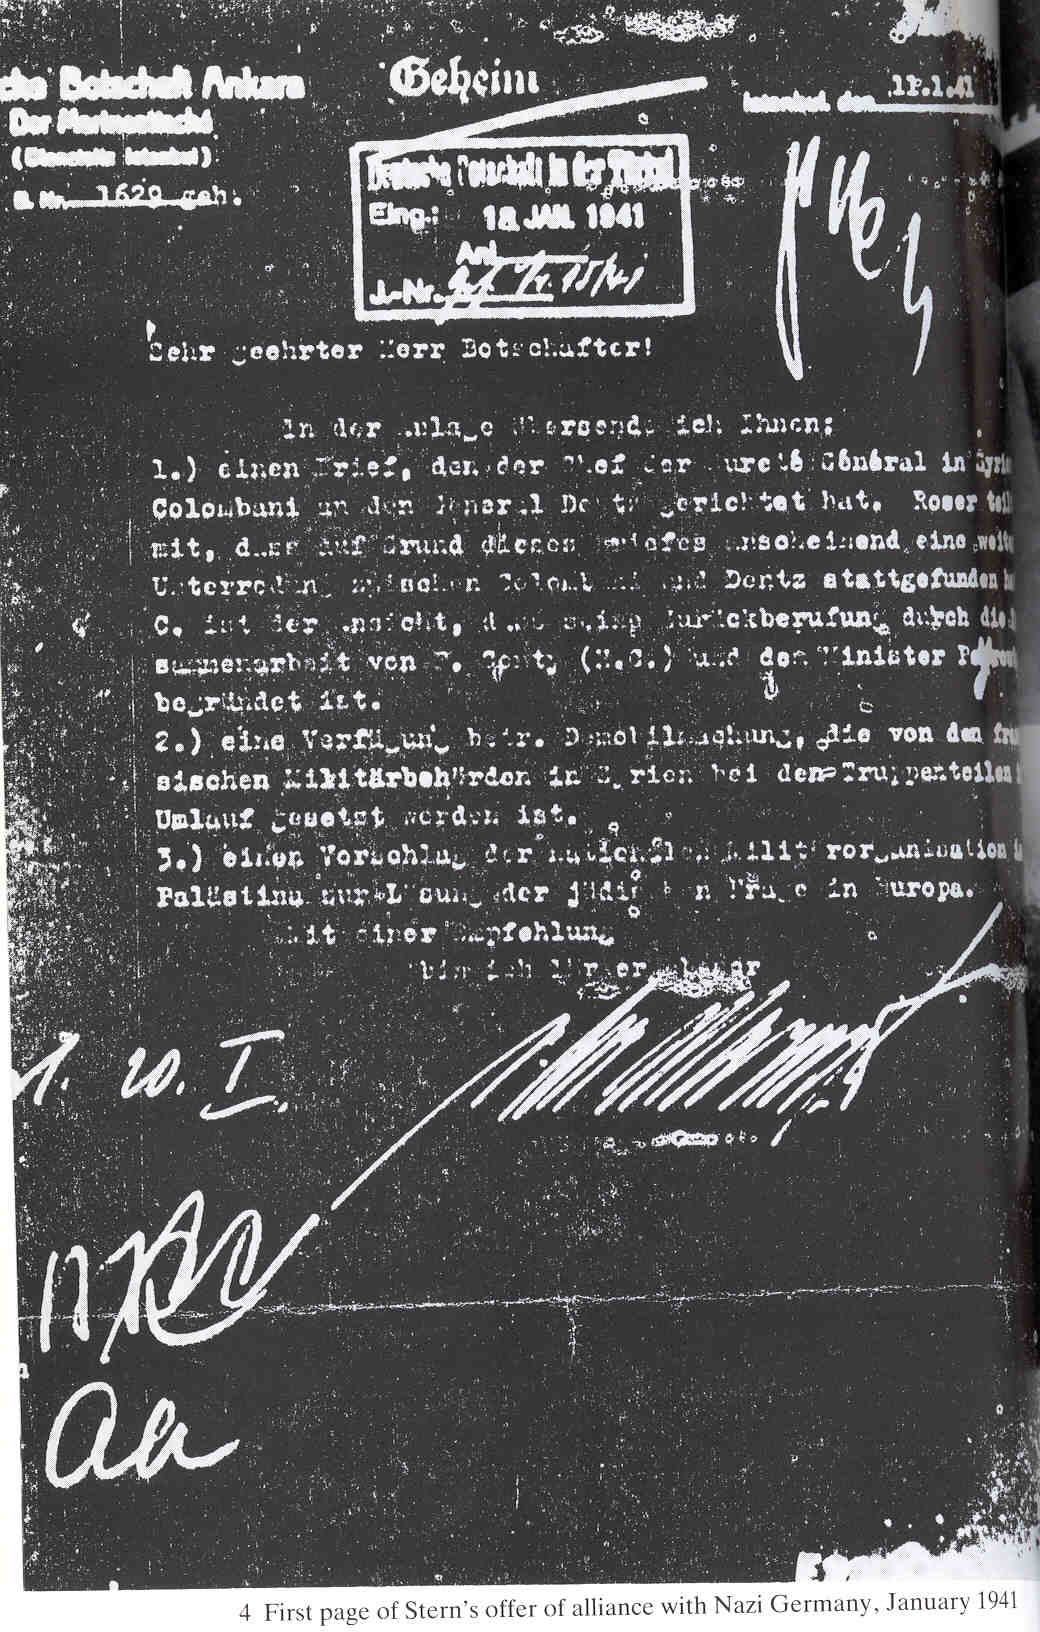 "מכתב אנקרה" שסופח להצעת הלח"י לשת"פ עם הגרמנים